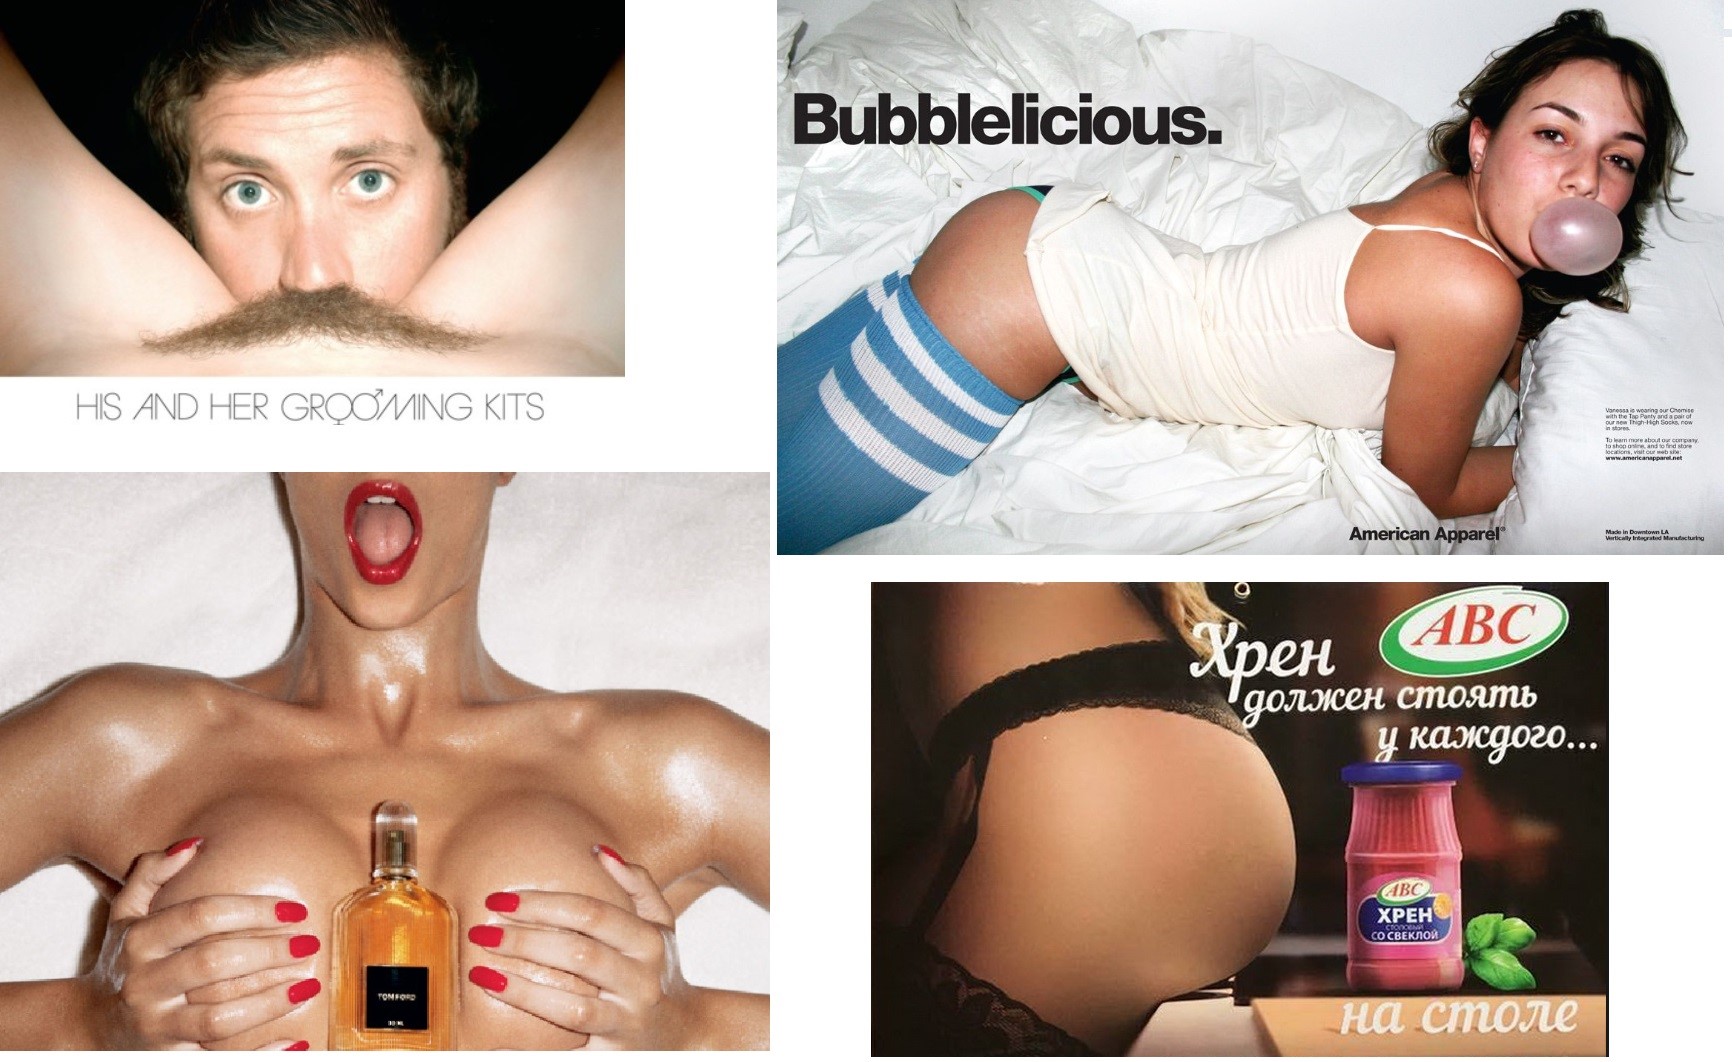 Примеры сексуального подтекста в рекламе.jpg